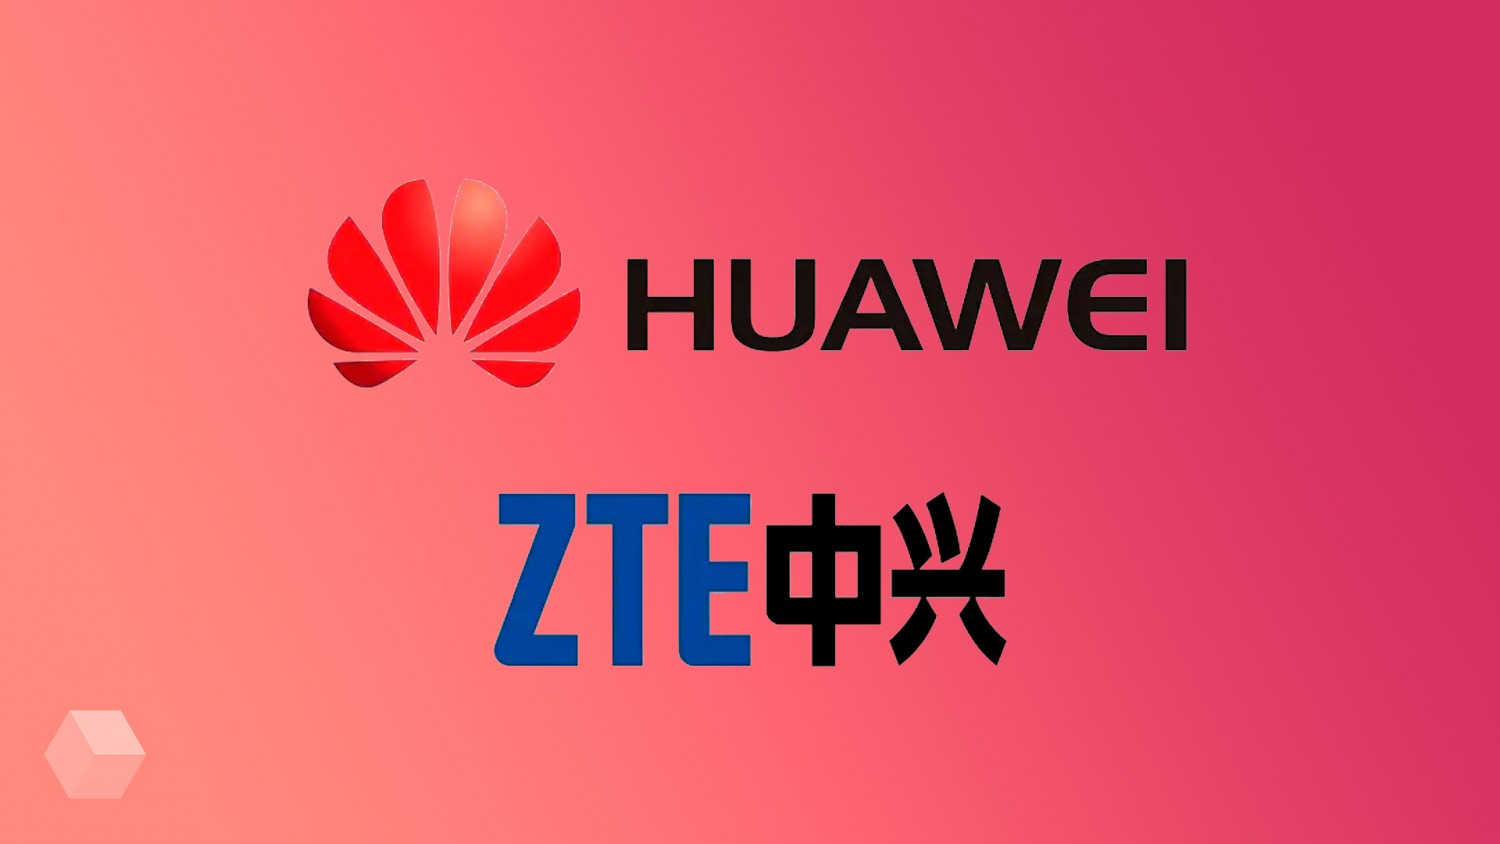 Федеральная комиссия по связи США объявила Huawei и ZTE угрозами национальной безопасности